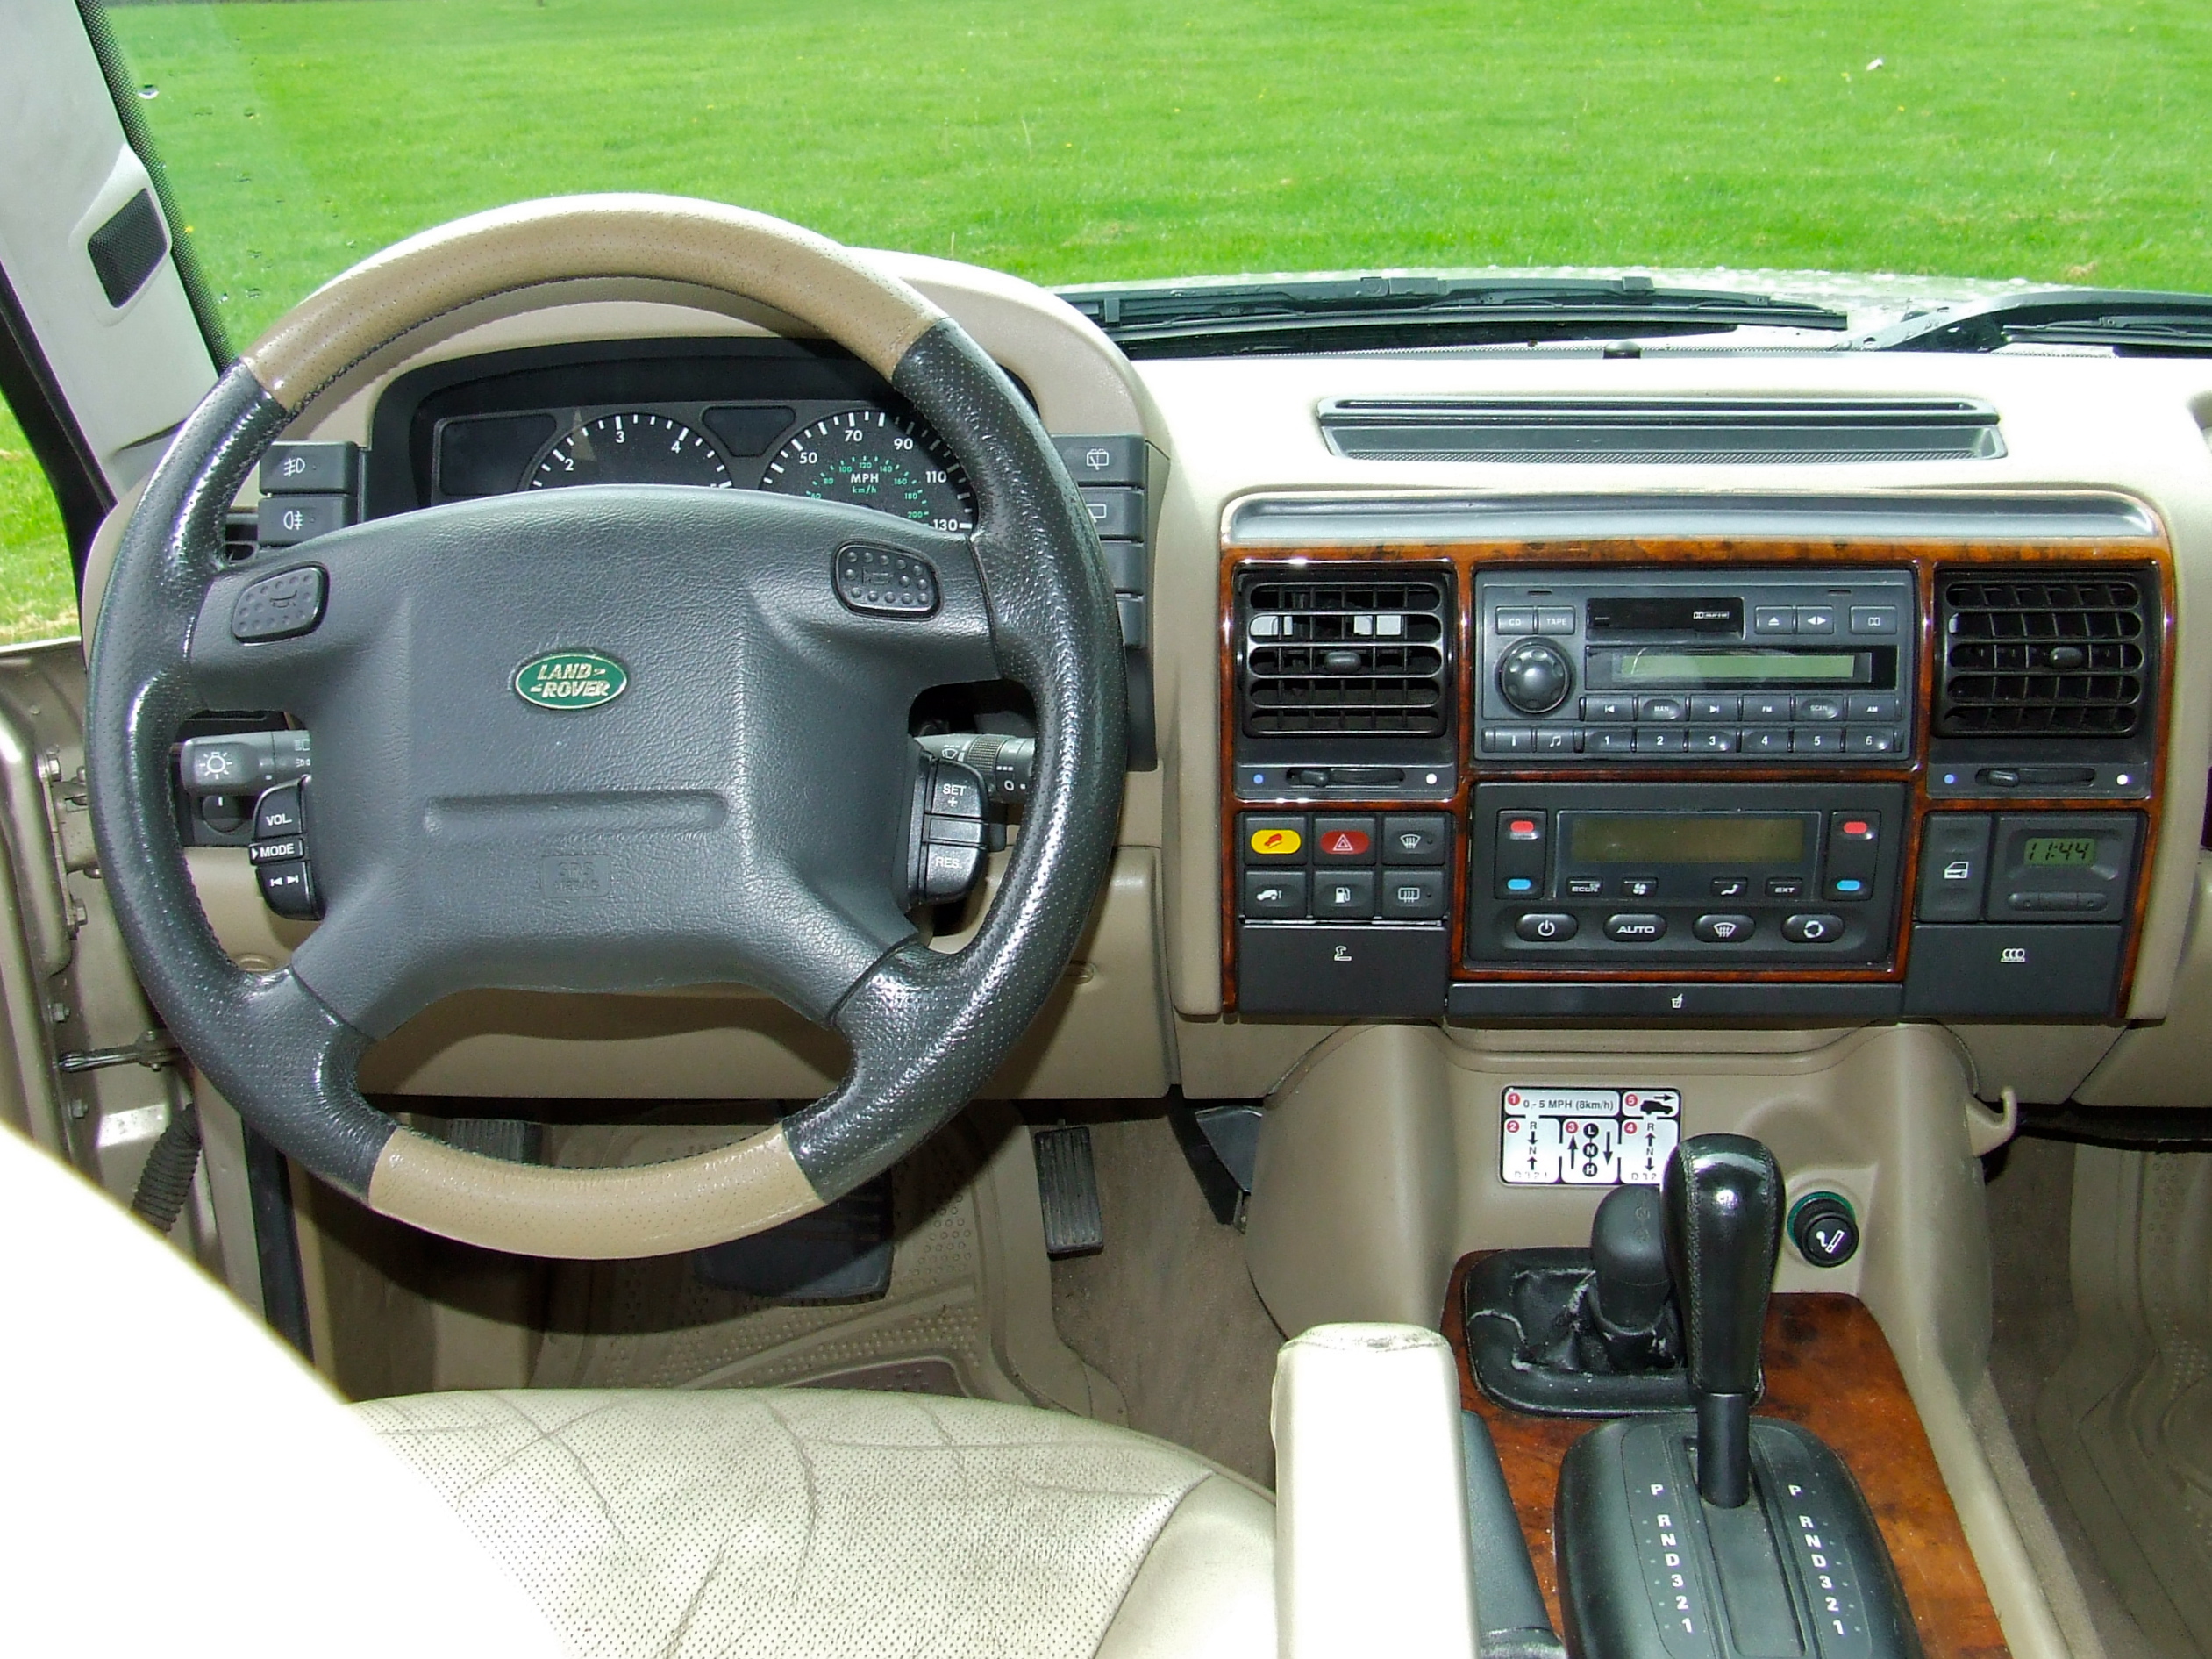 Дискавери 2 2.5. 2000 Land Rover Discovery II. Land Rover Discovery 2 салон. Ленд Ровер Дискавери 2 2004. Ленд Ровер Дискавери 2 салон.